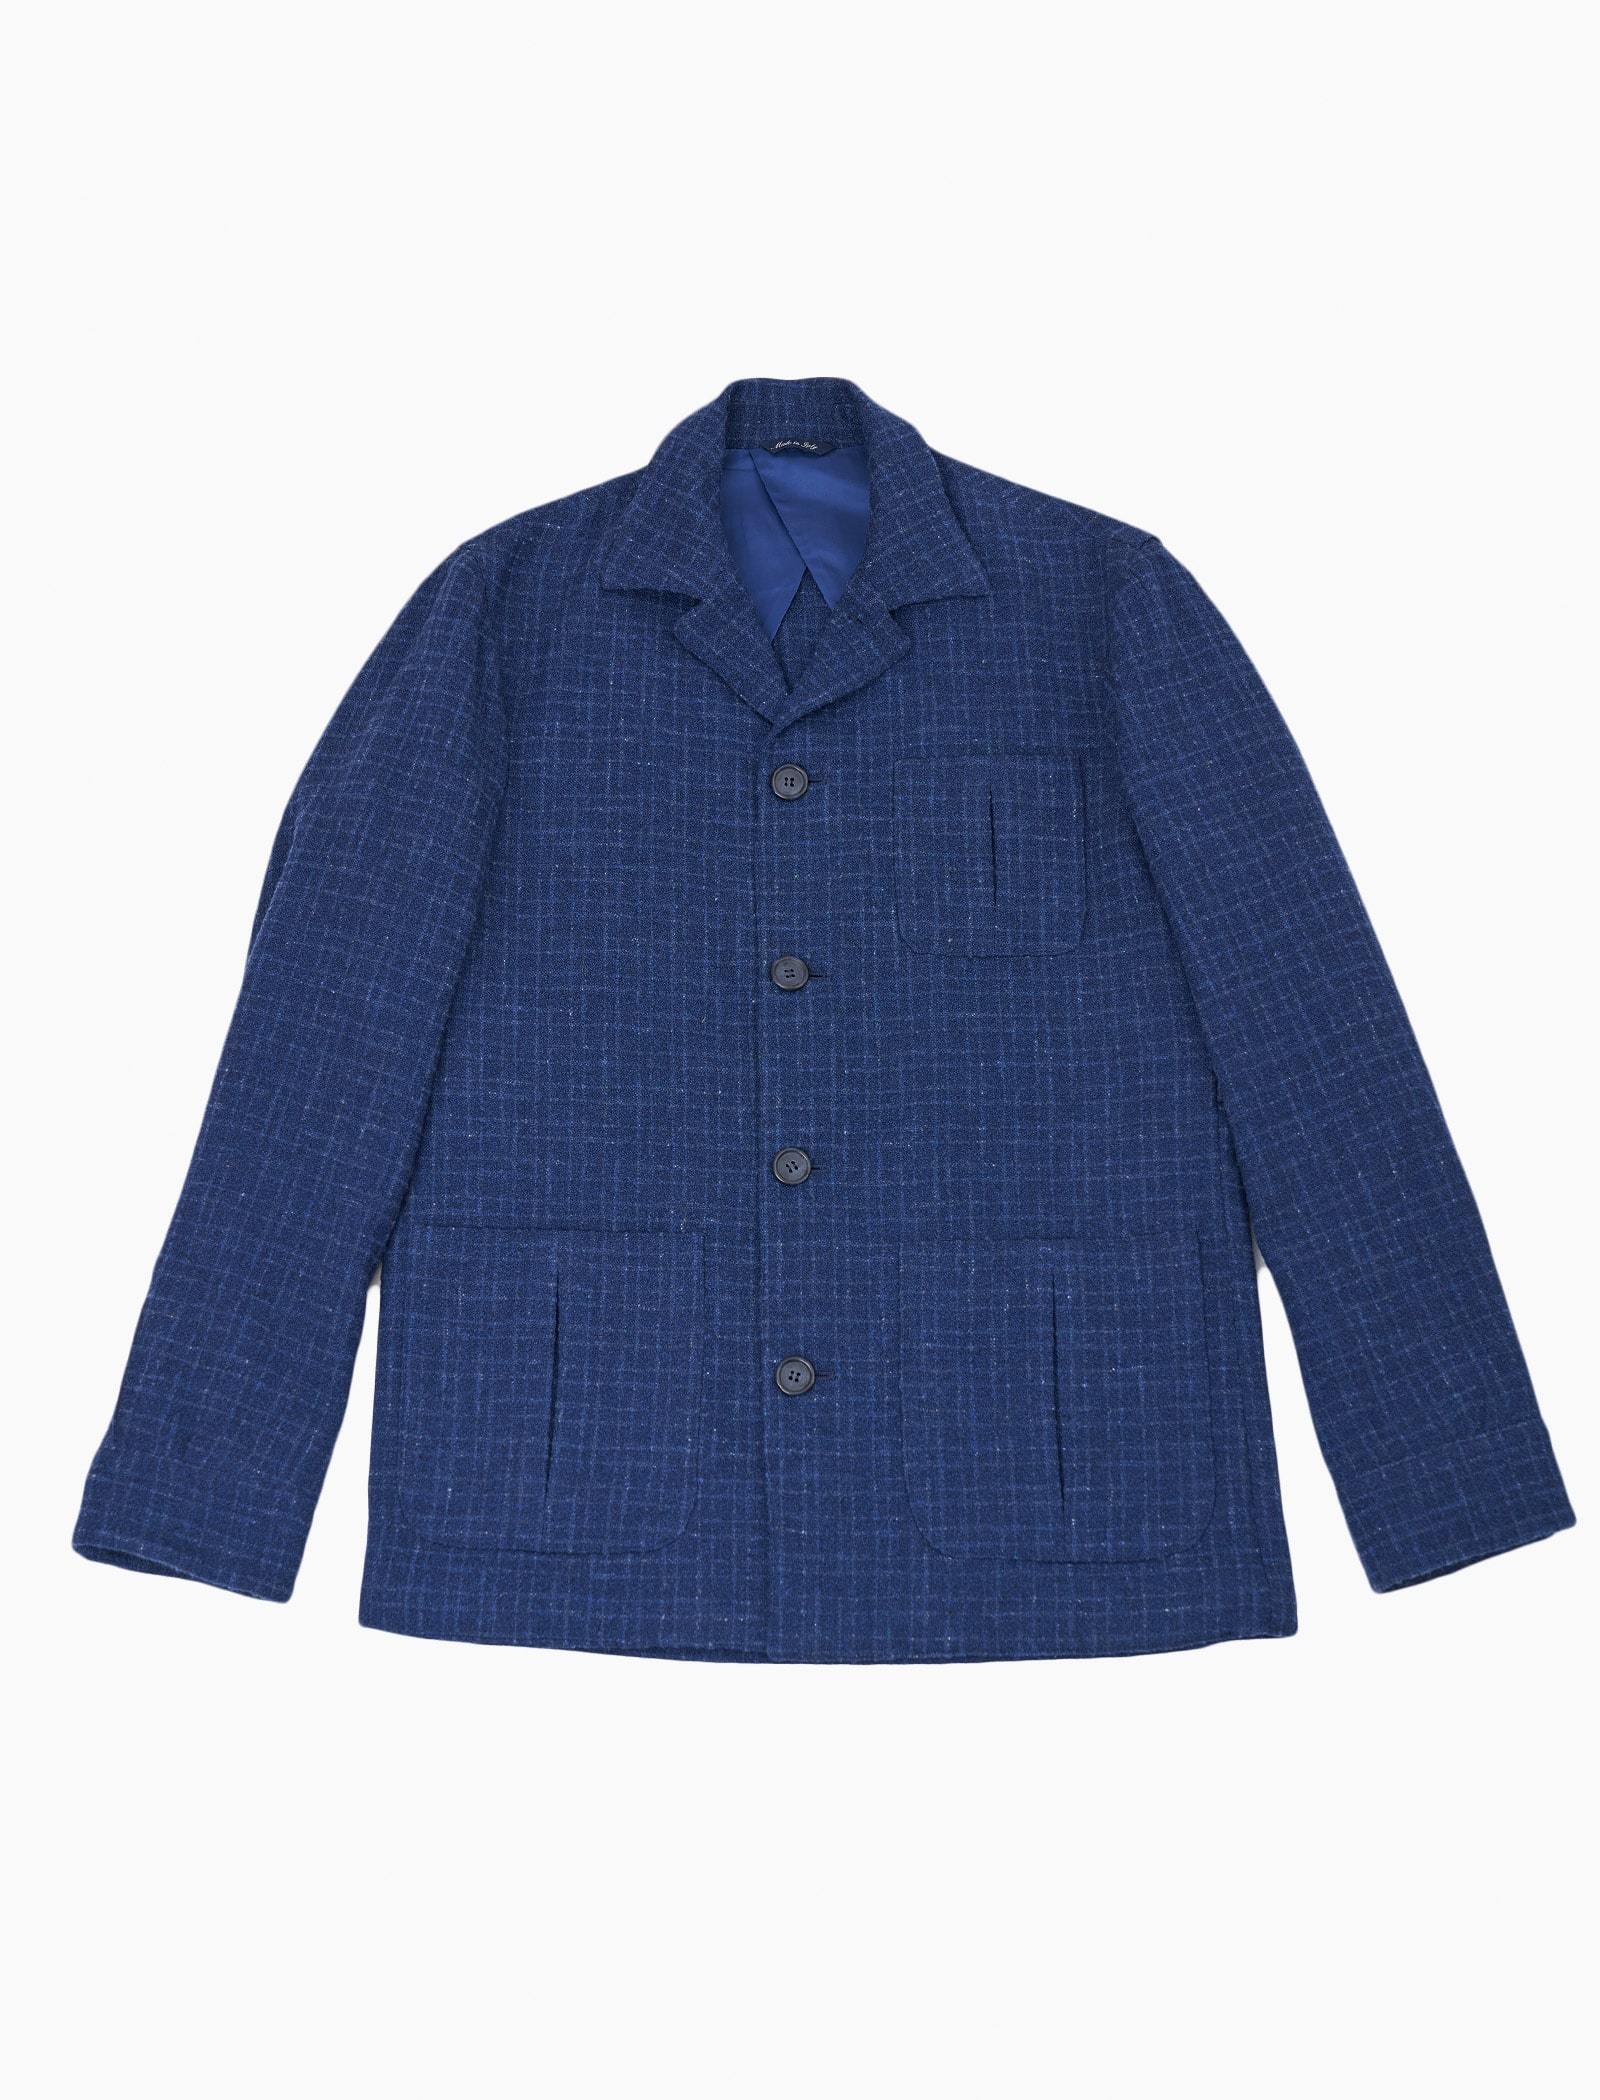 Royal Blue Textured Check Wool Shacket | 40 Colori